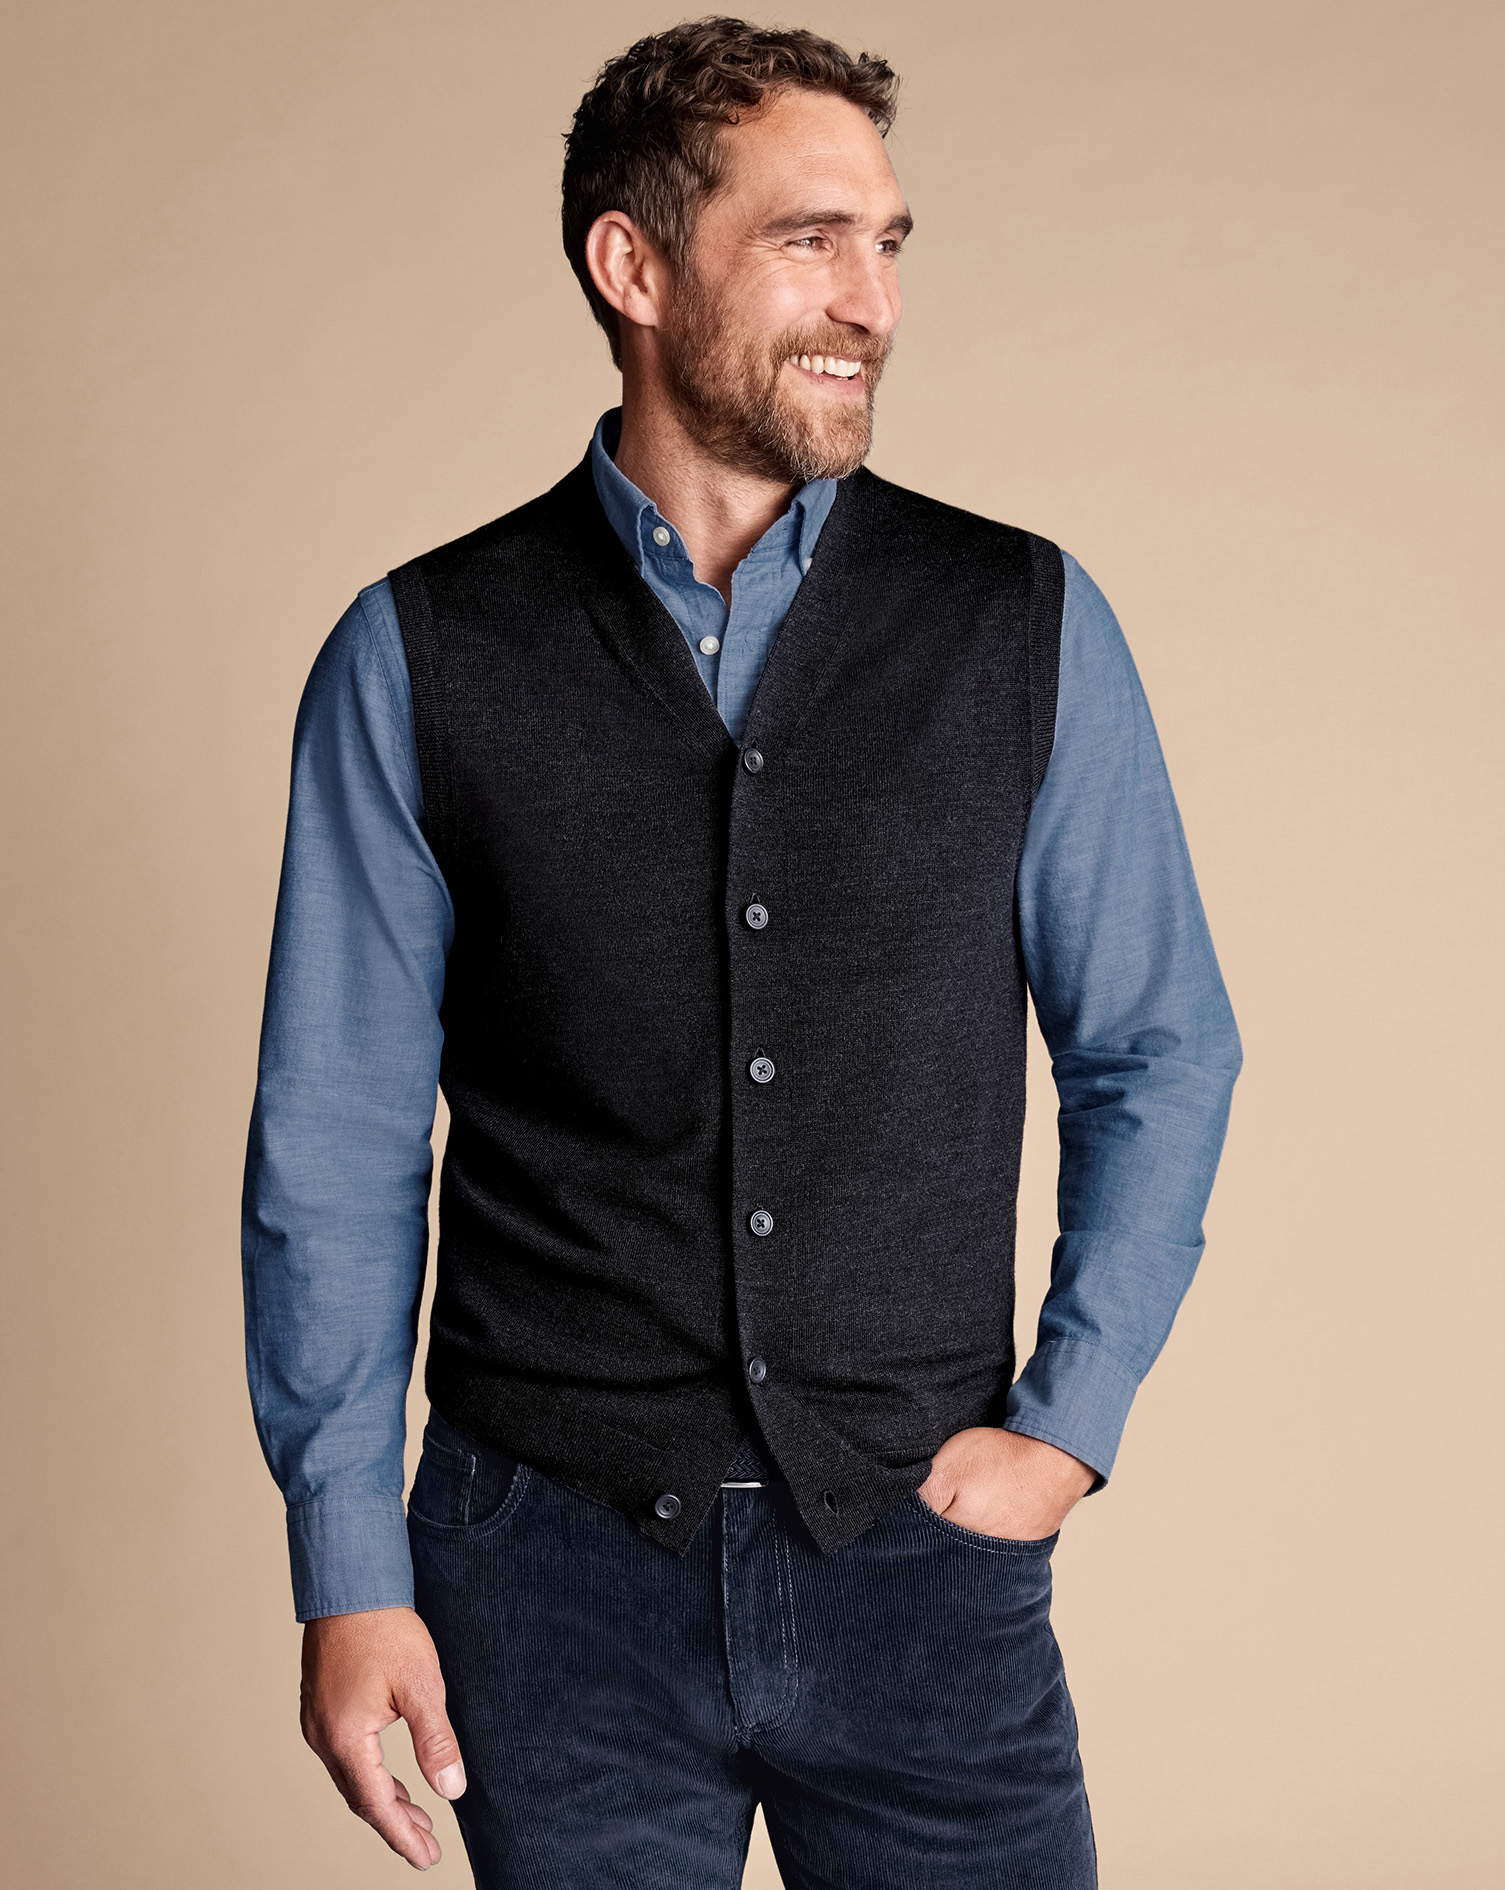 Men's Charles Tyrwhitt Merino Sleeveless Cardigan - Charcoal Grey Size XS Wool
